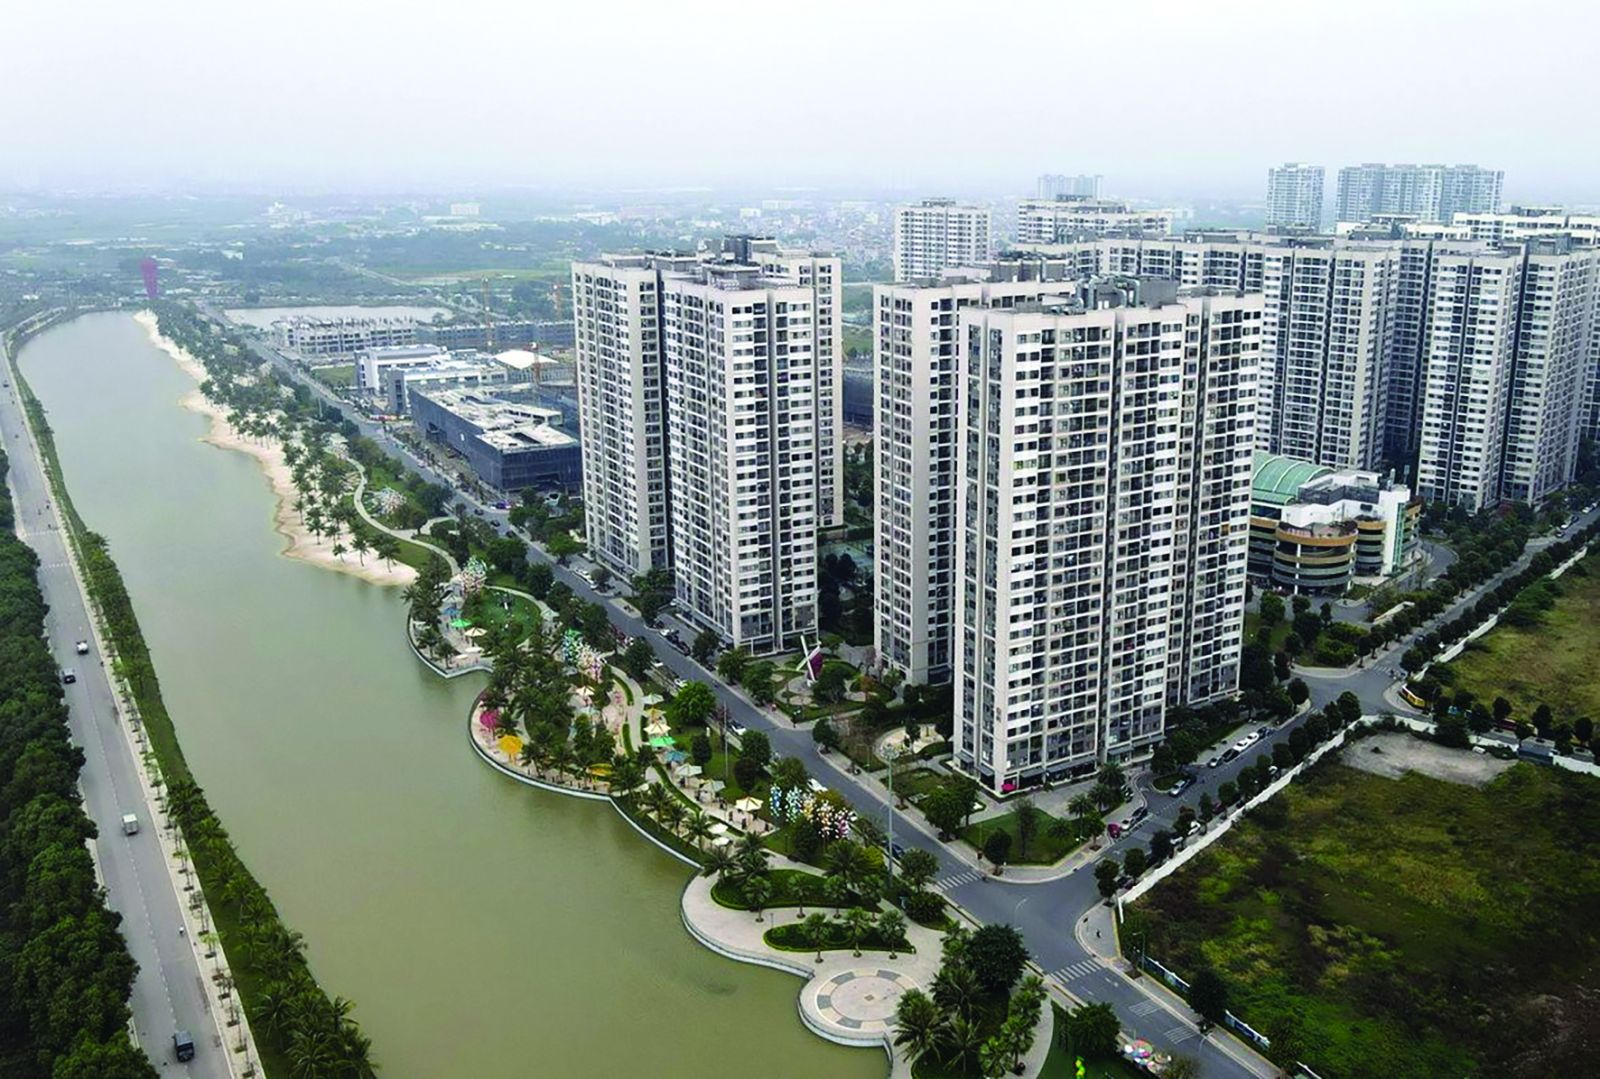  Bất động sản phía Đông Hà Nội có nhiều tiềm năng phát triển. (Khu đô thị Vinhomes Ocean Park, Gia Lâm. Ảnh: Nguyễn Quang